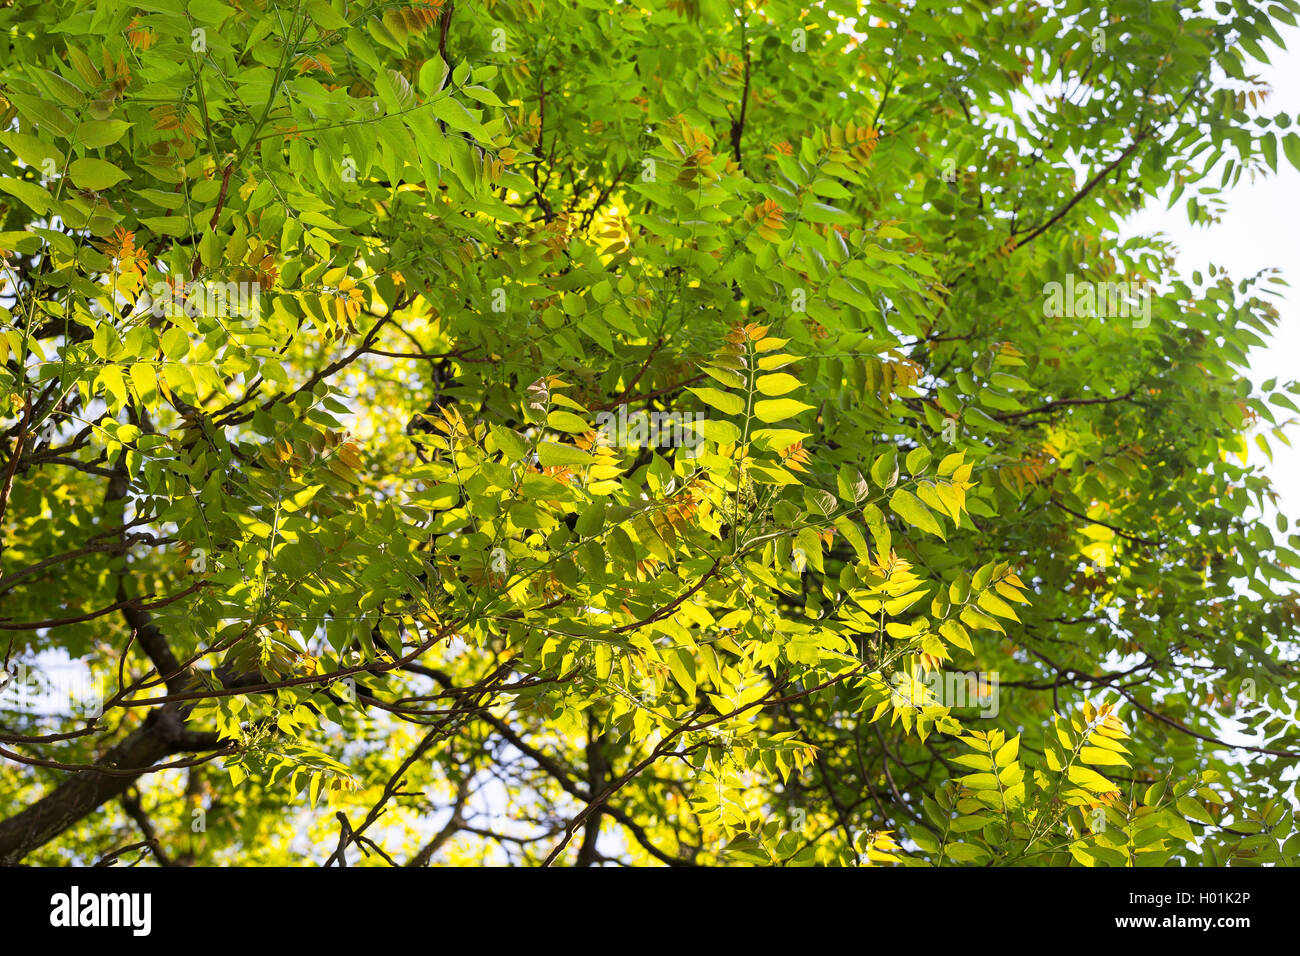 Albero del cielo, TREE-di-cielo (Ailanthus altissima, Ailanthus glandulosa), rami in controluce, Germania Foto Stock